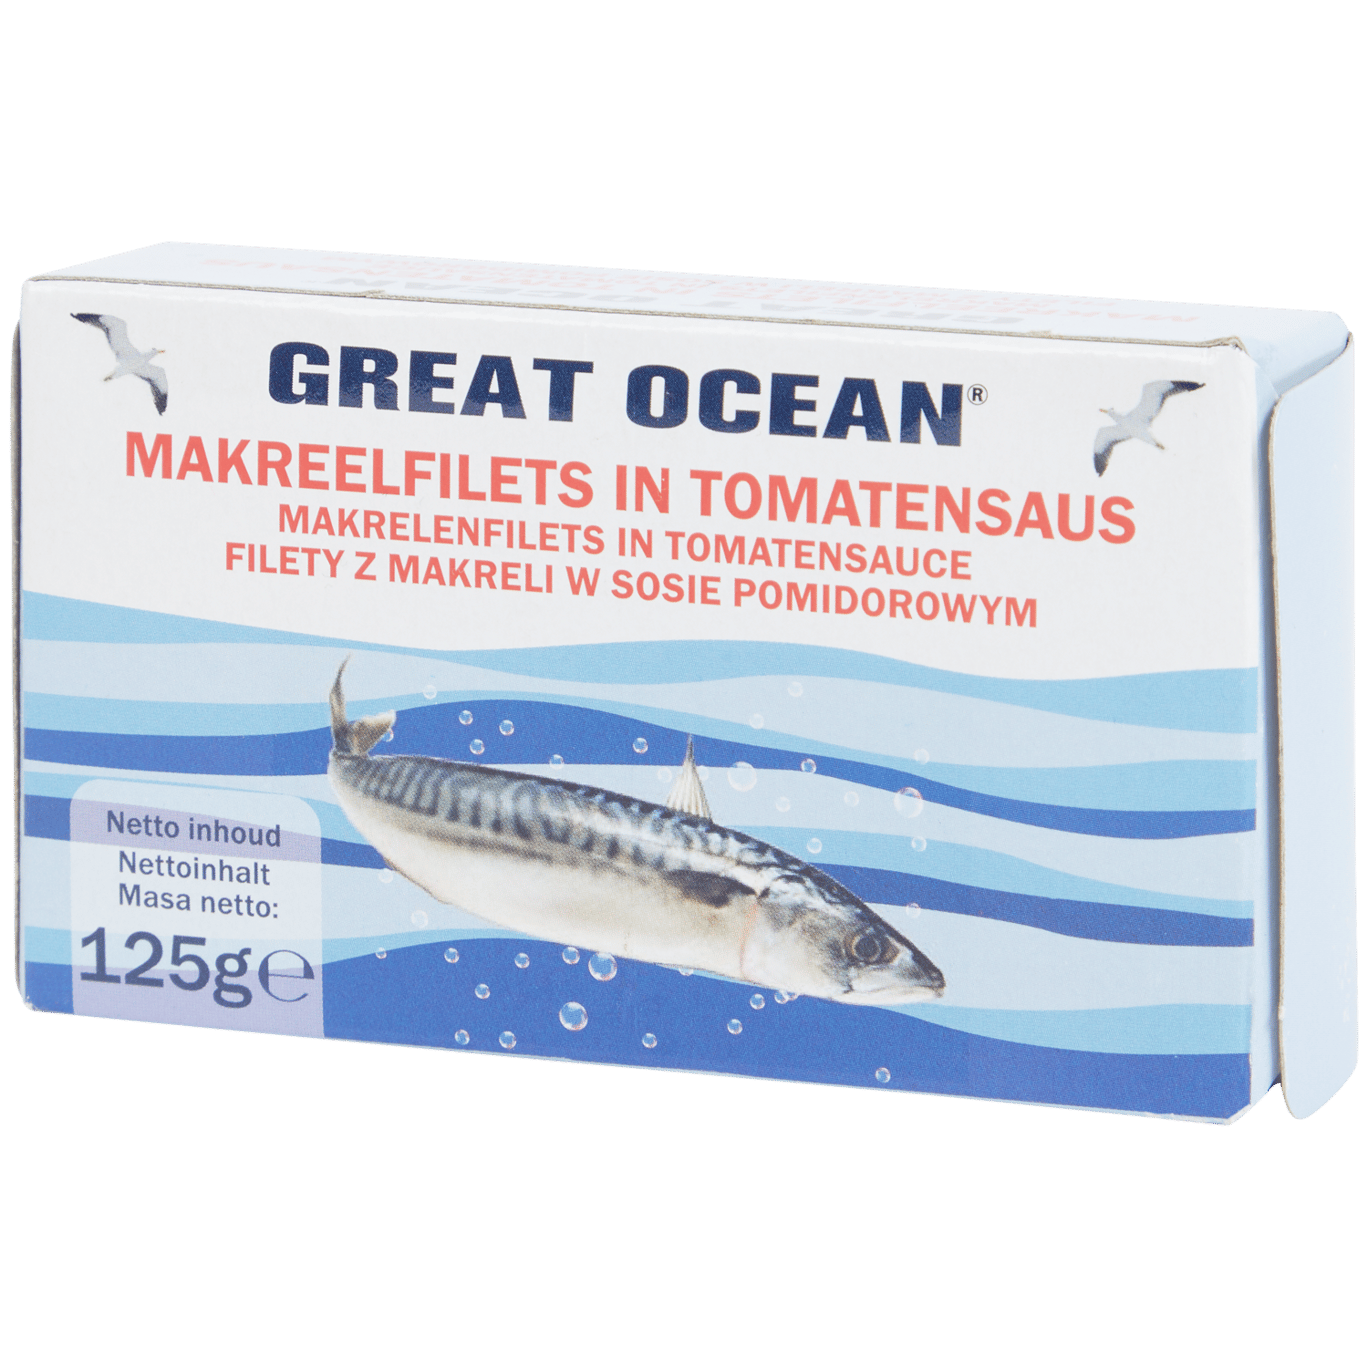 Great Ocean makreelfilet in tomatensaus